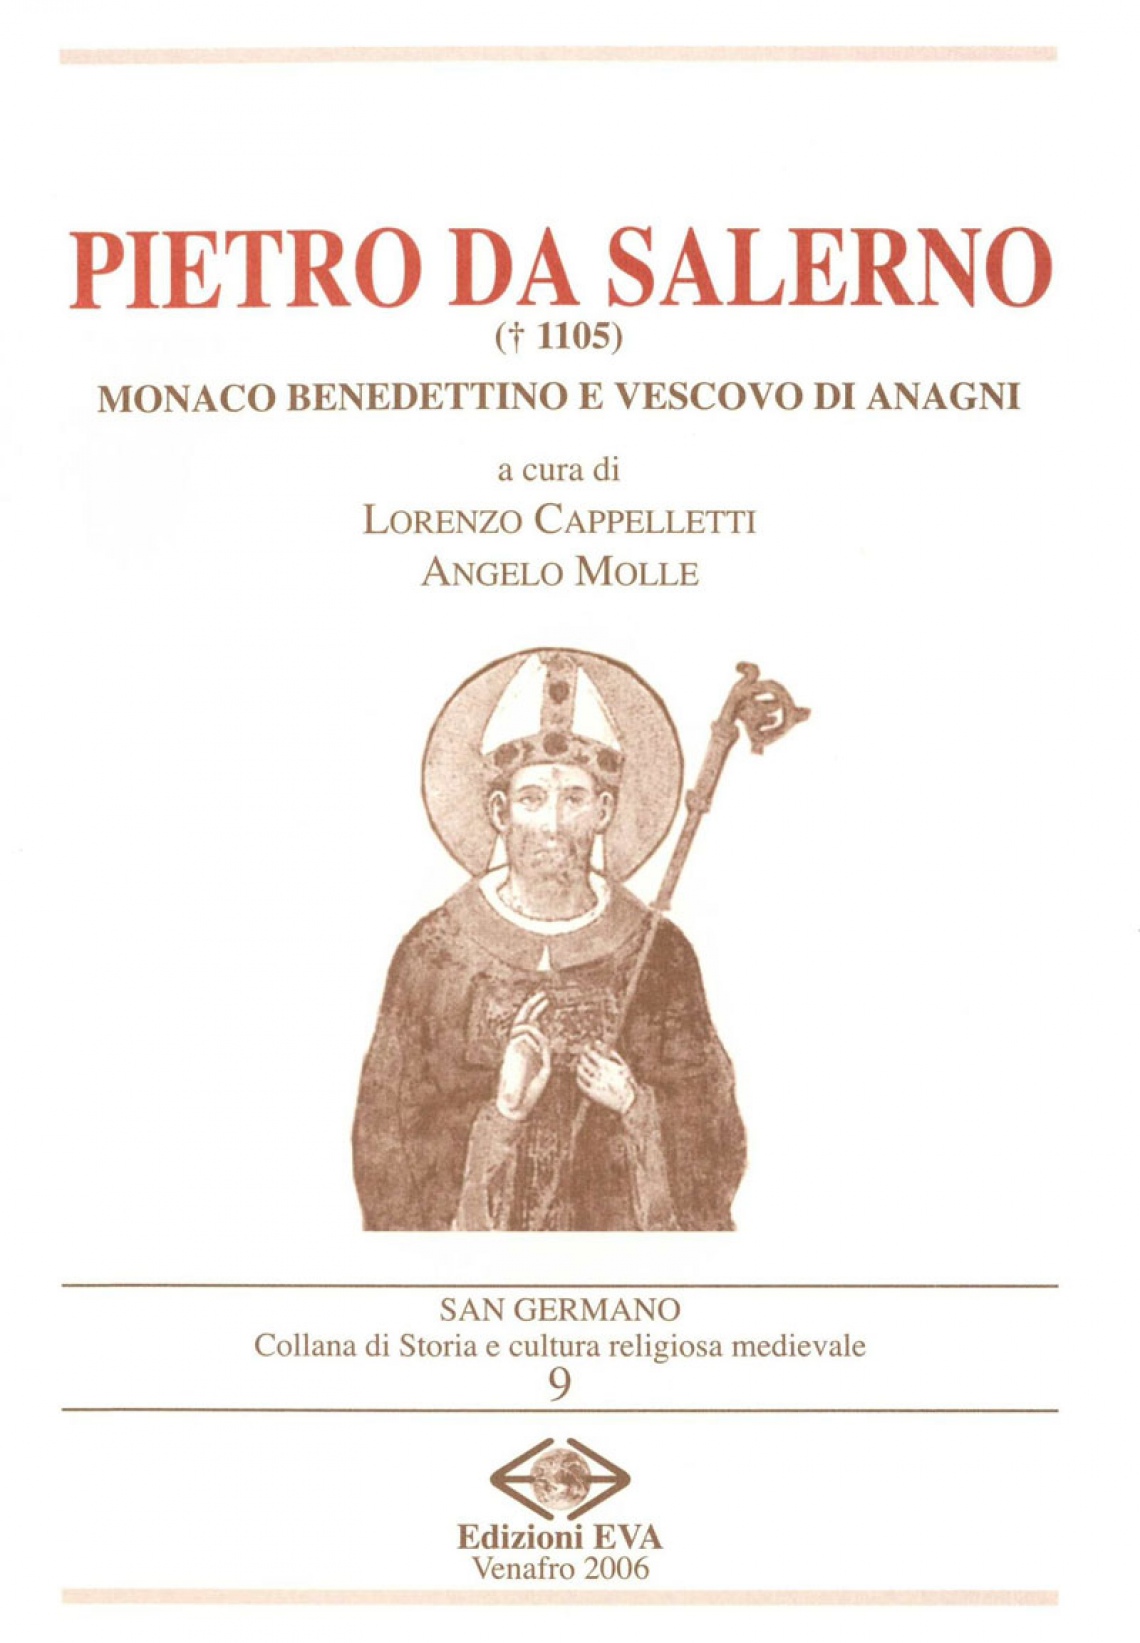 Pietro da Salerno (1105). Monaco benedettino e vescovo di Anagni